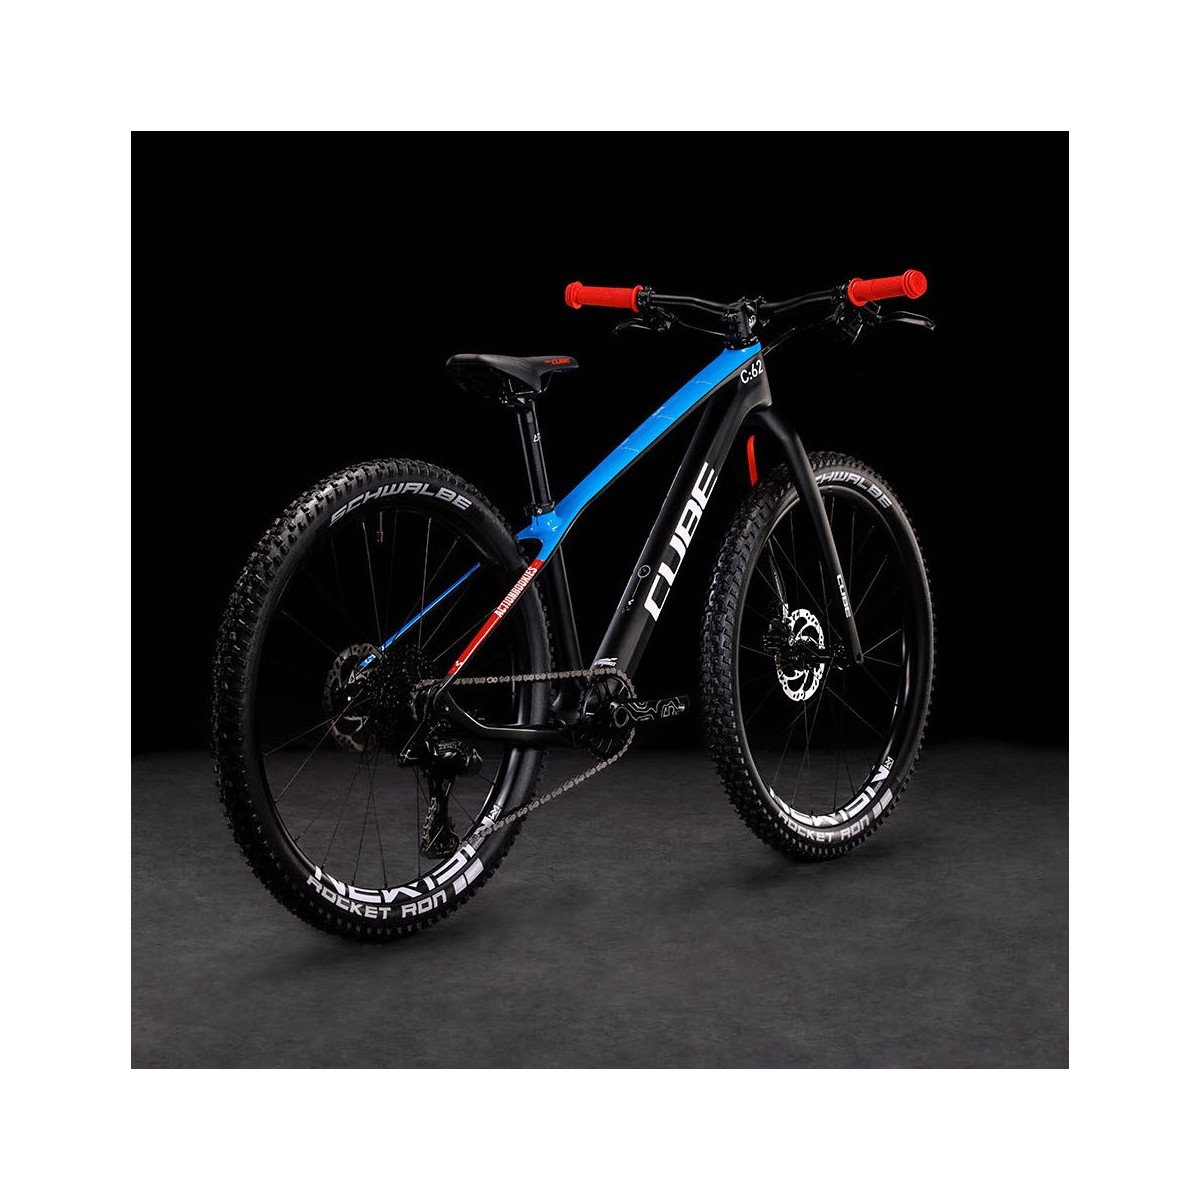 CUBE ELITE 240 C:62 PRO karbona bērnu velosipēds  carbon/blue/red - 2023